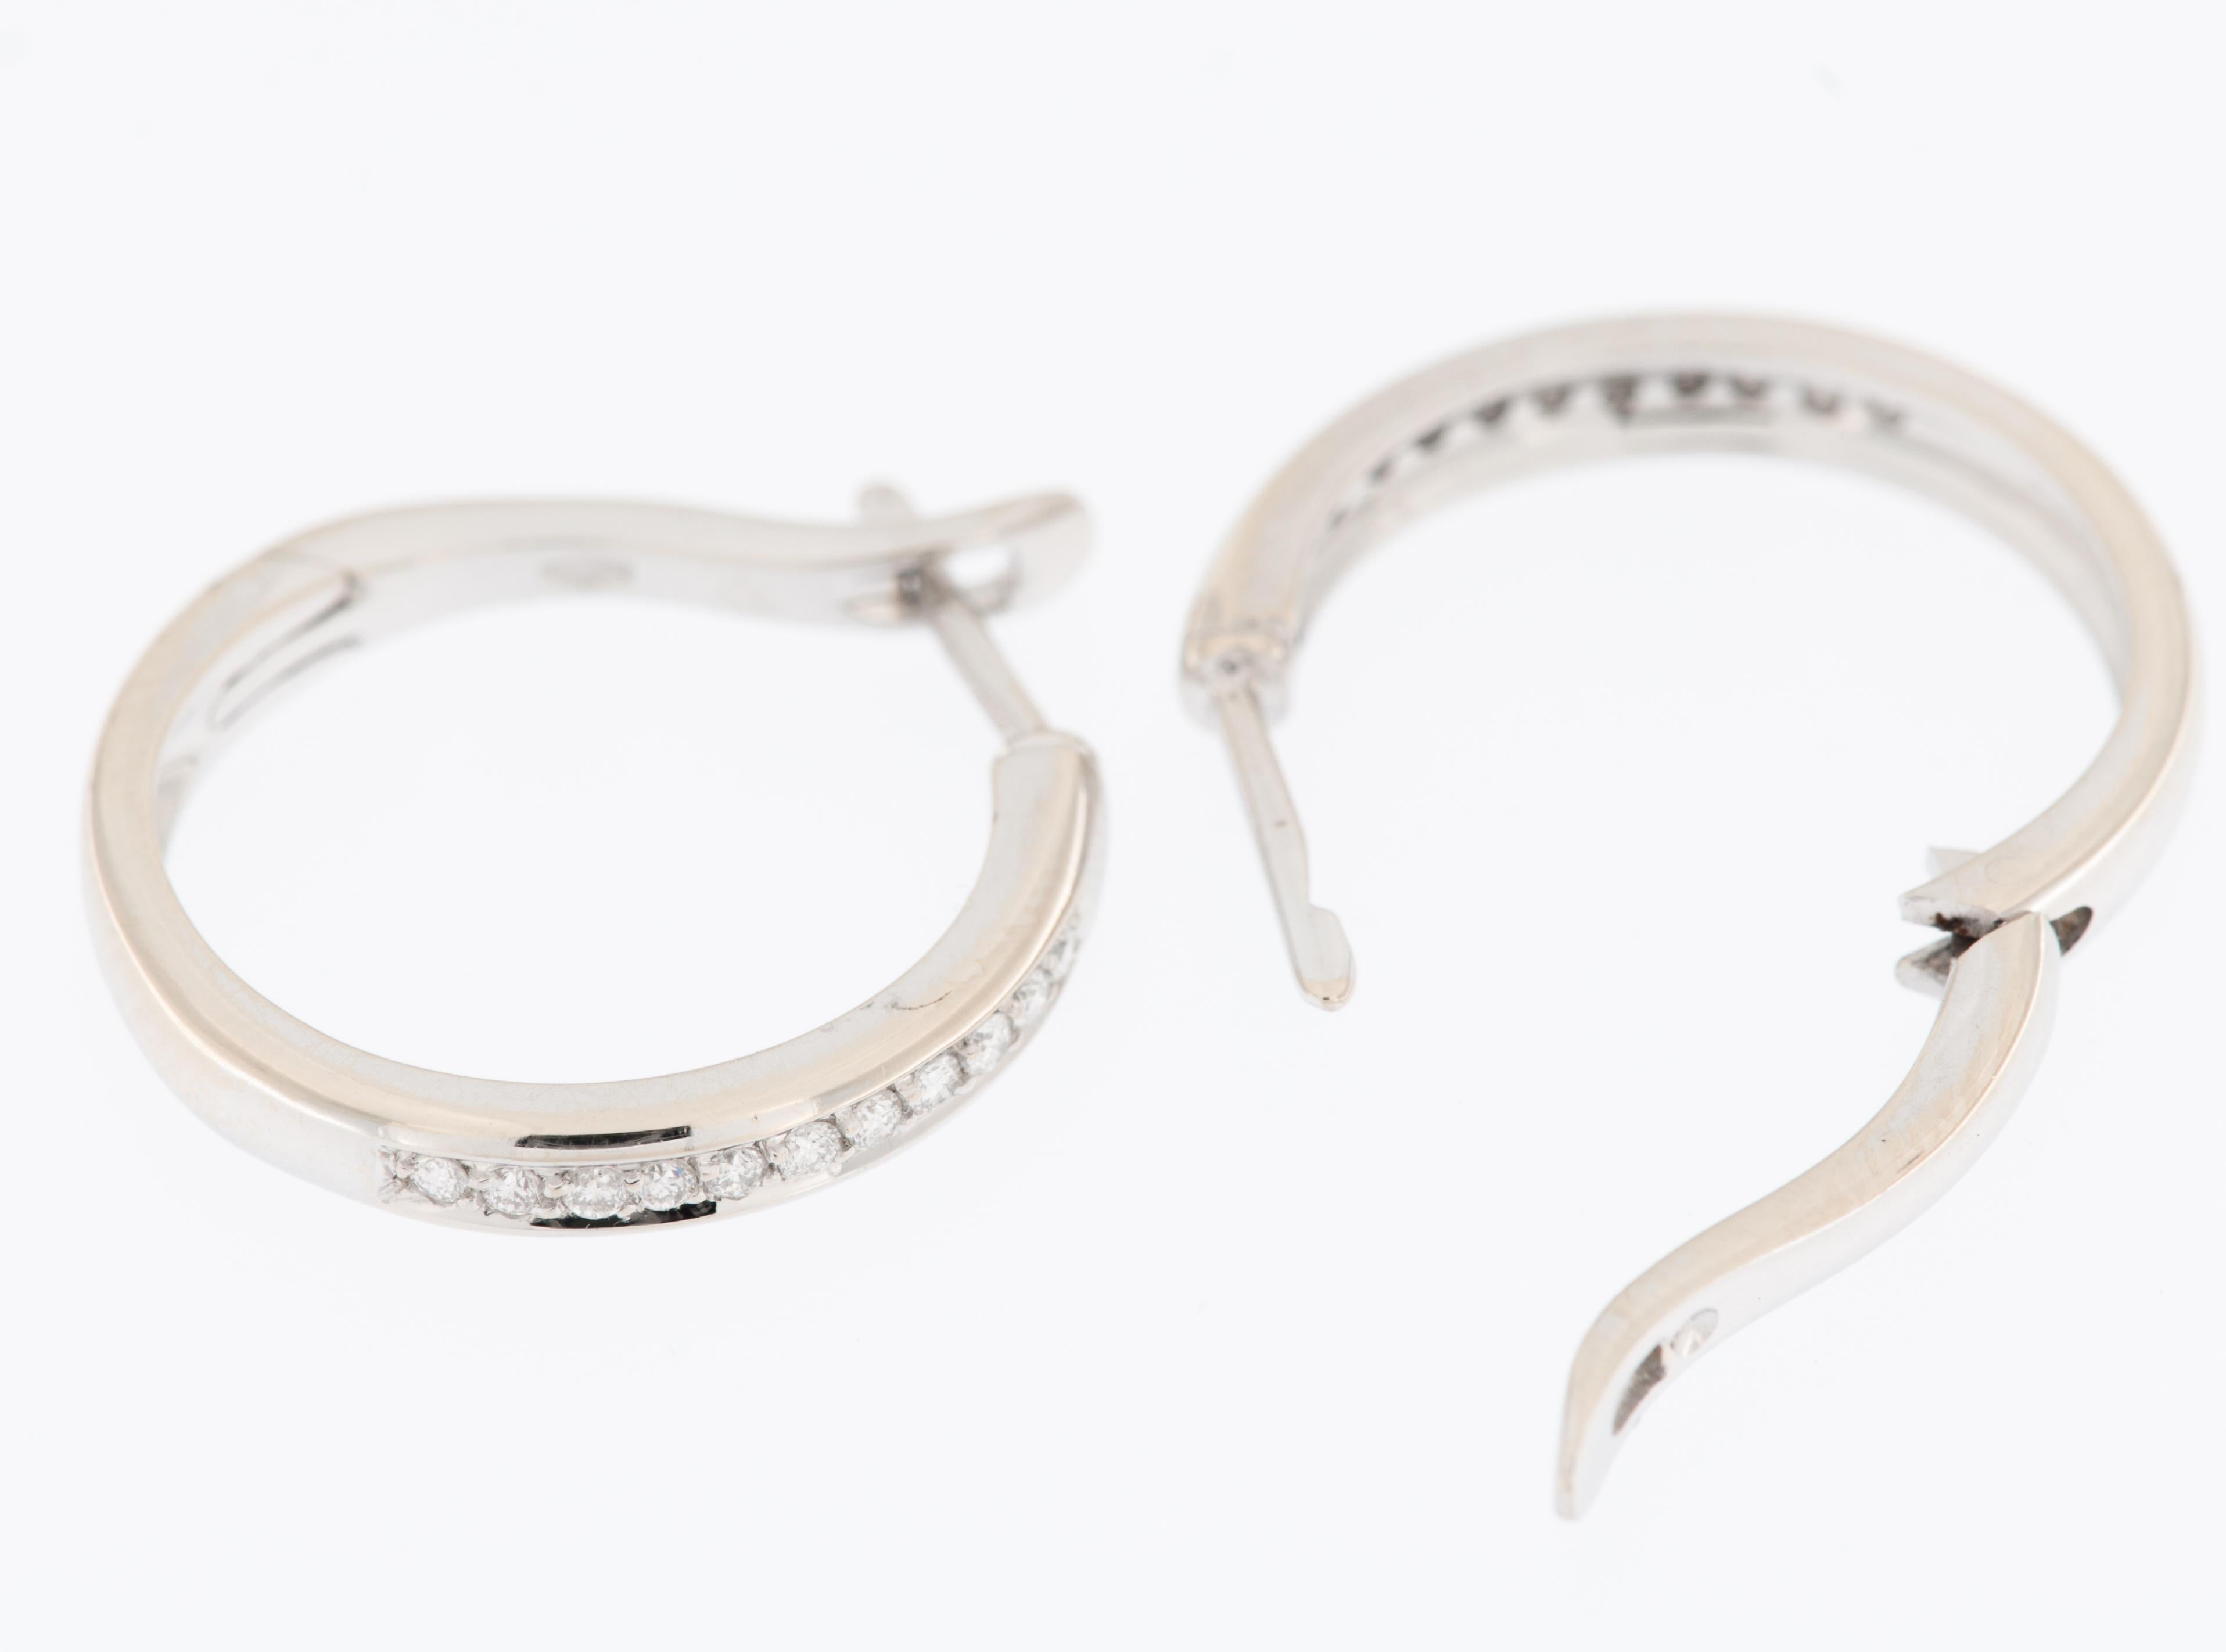 Les French Hoop Earrings en or blanc 18kt avec diamants sont un accessoire éblouissant et sophistiqué qui allie sans effort le style classique à l'élégance contemporaine. Fabriquées en or blanc 18 carats de haute qualité, ces boucles d'oreilles